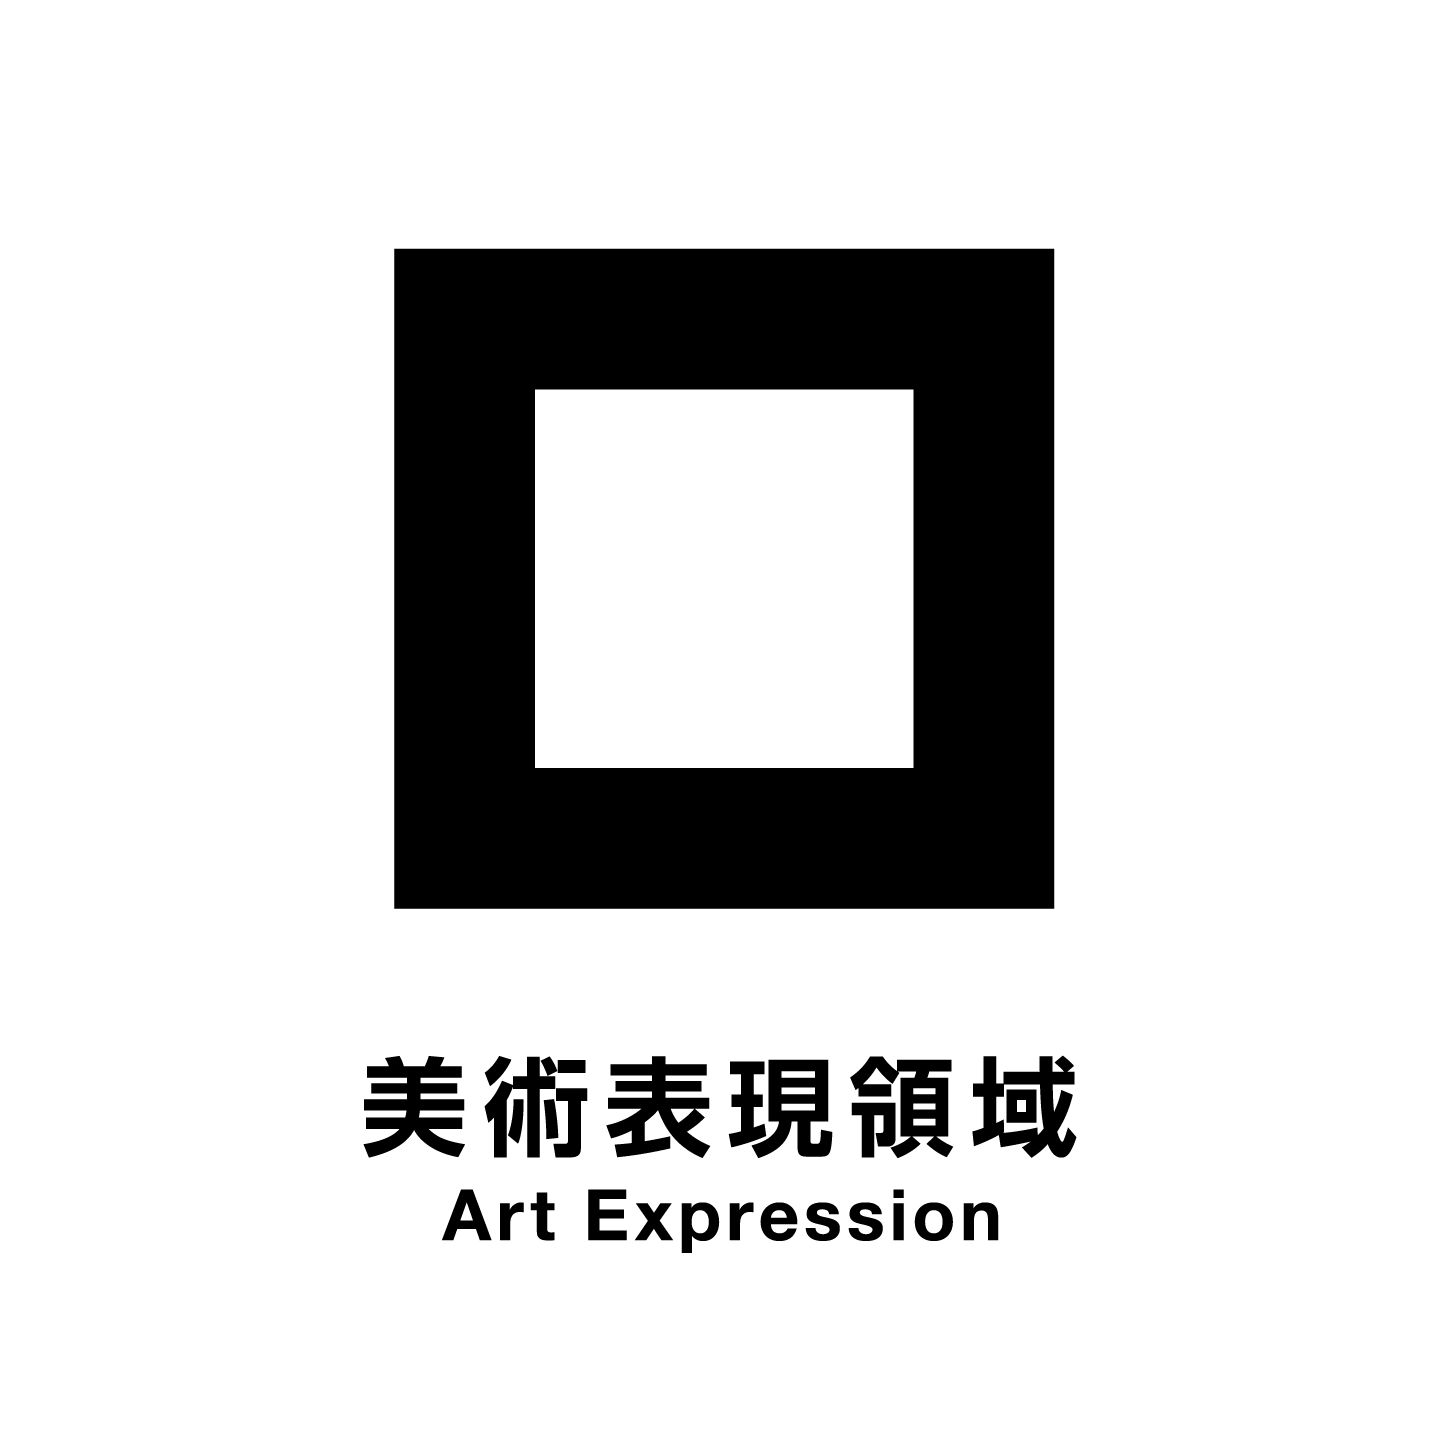 美術表現領域 Art Expression